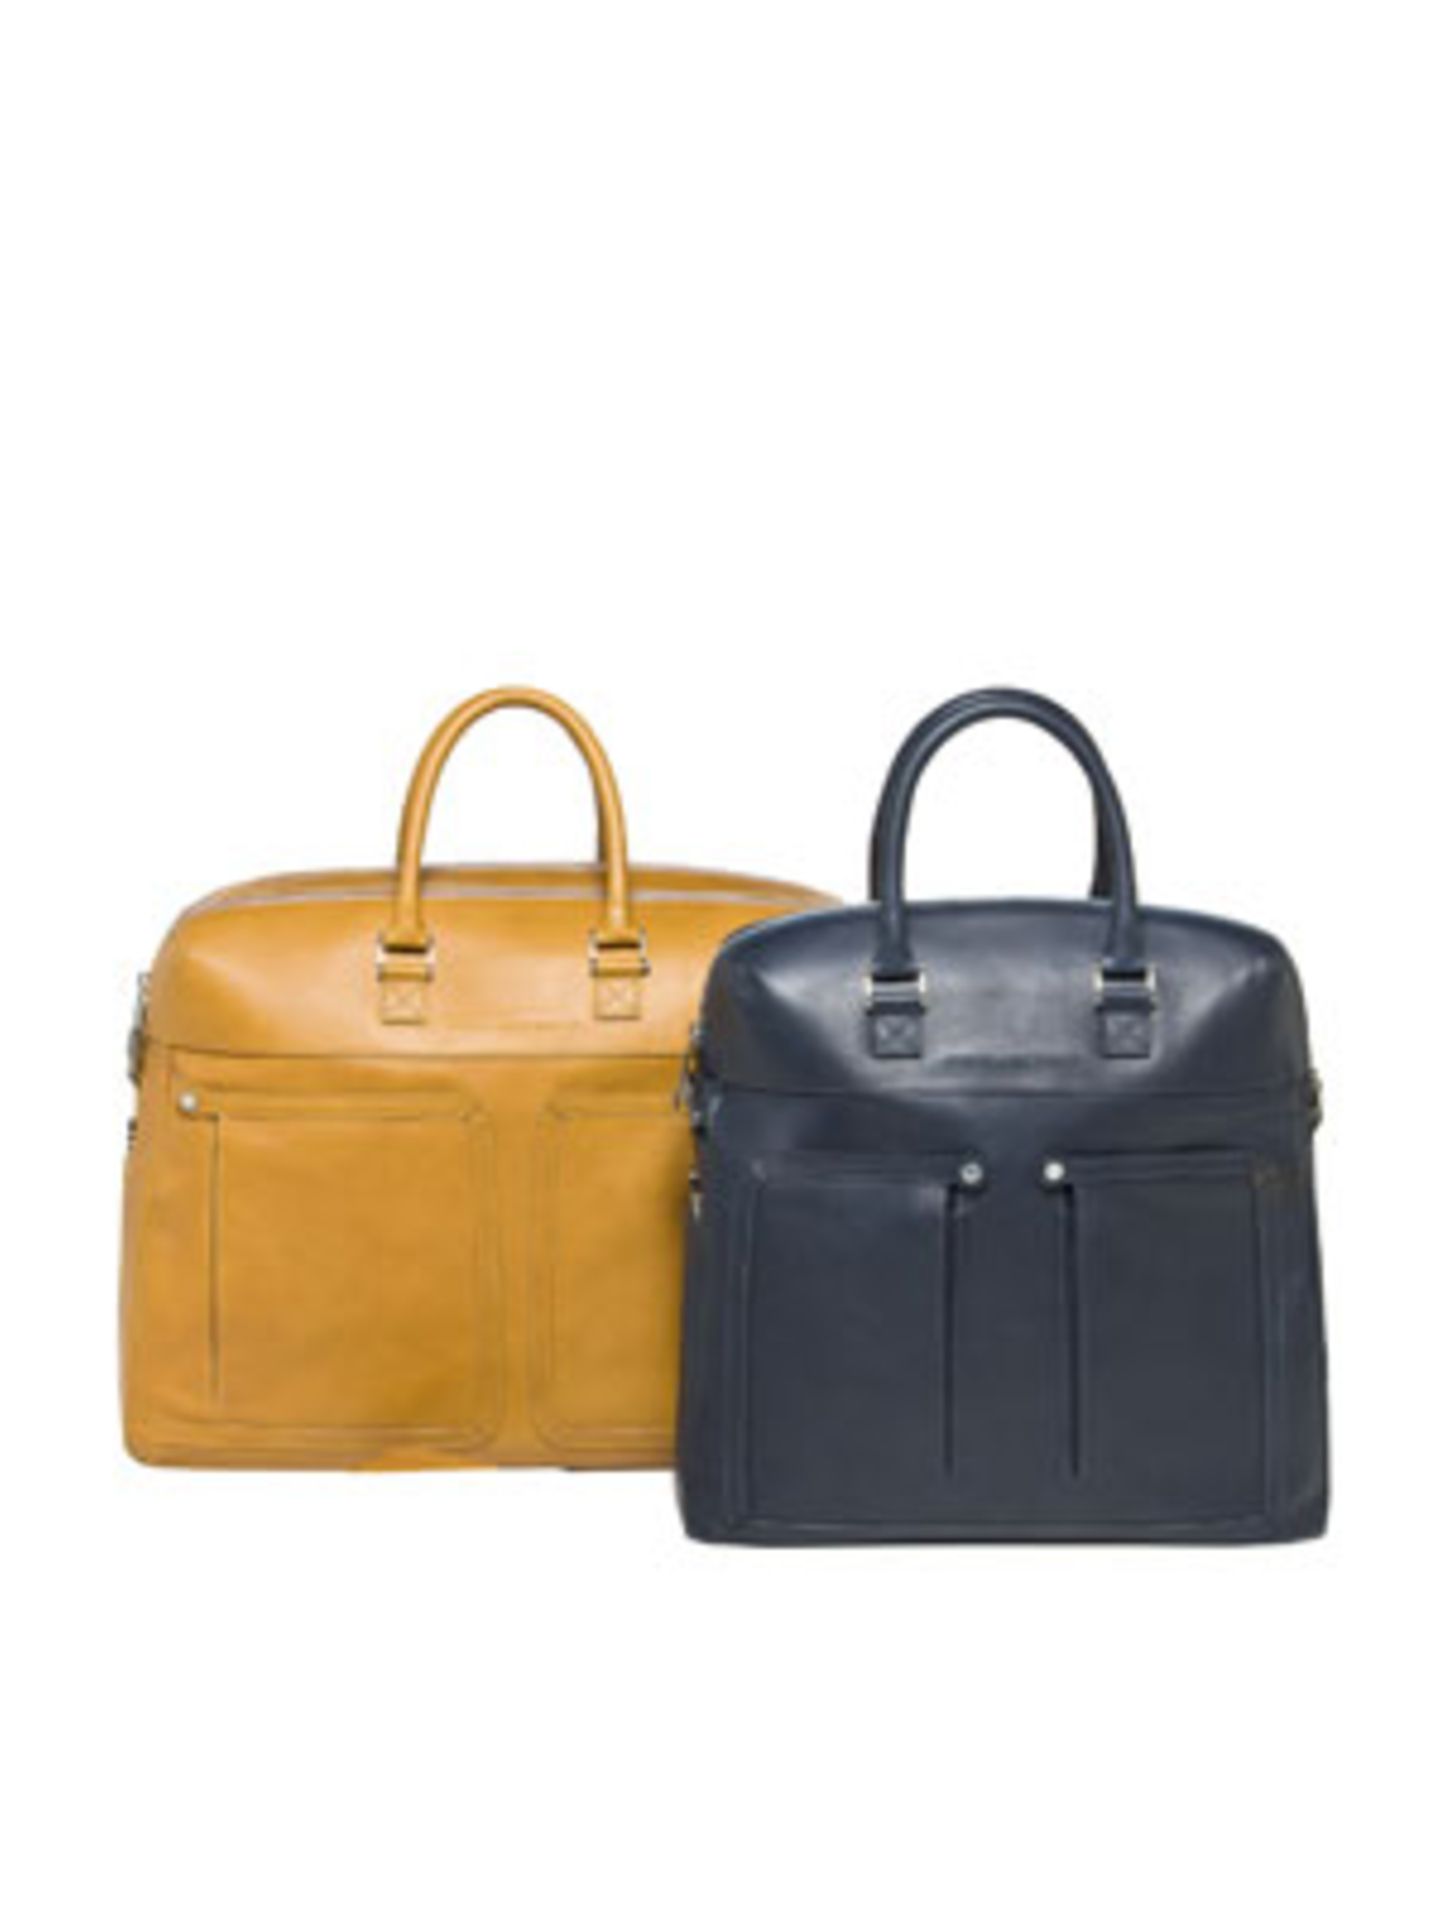 Elegant, funktional und todschick kommen diese beiden Modelle von PIQUADRO daher. Um 250 Euro (gelbe Tasche) und 310 Euro (dunkelblaues Modell).